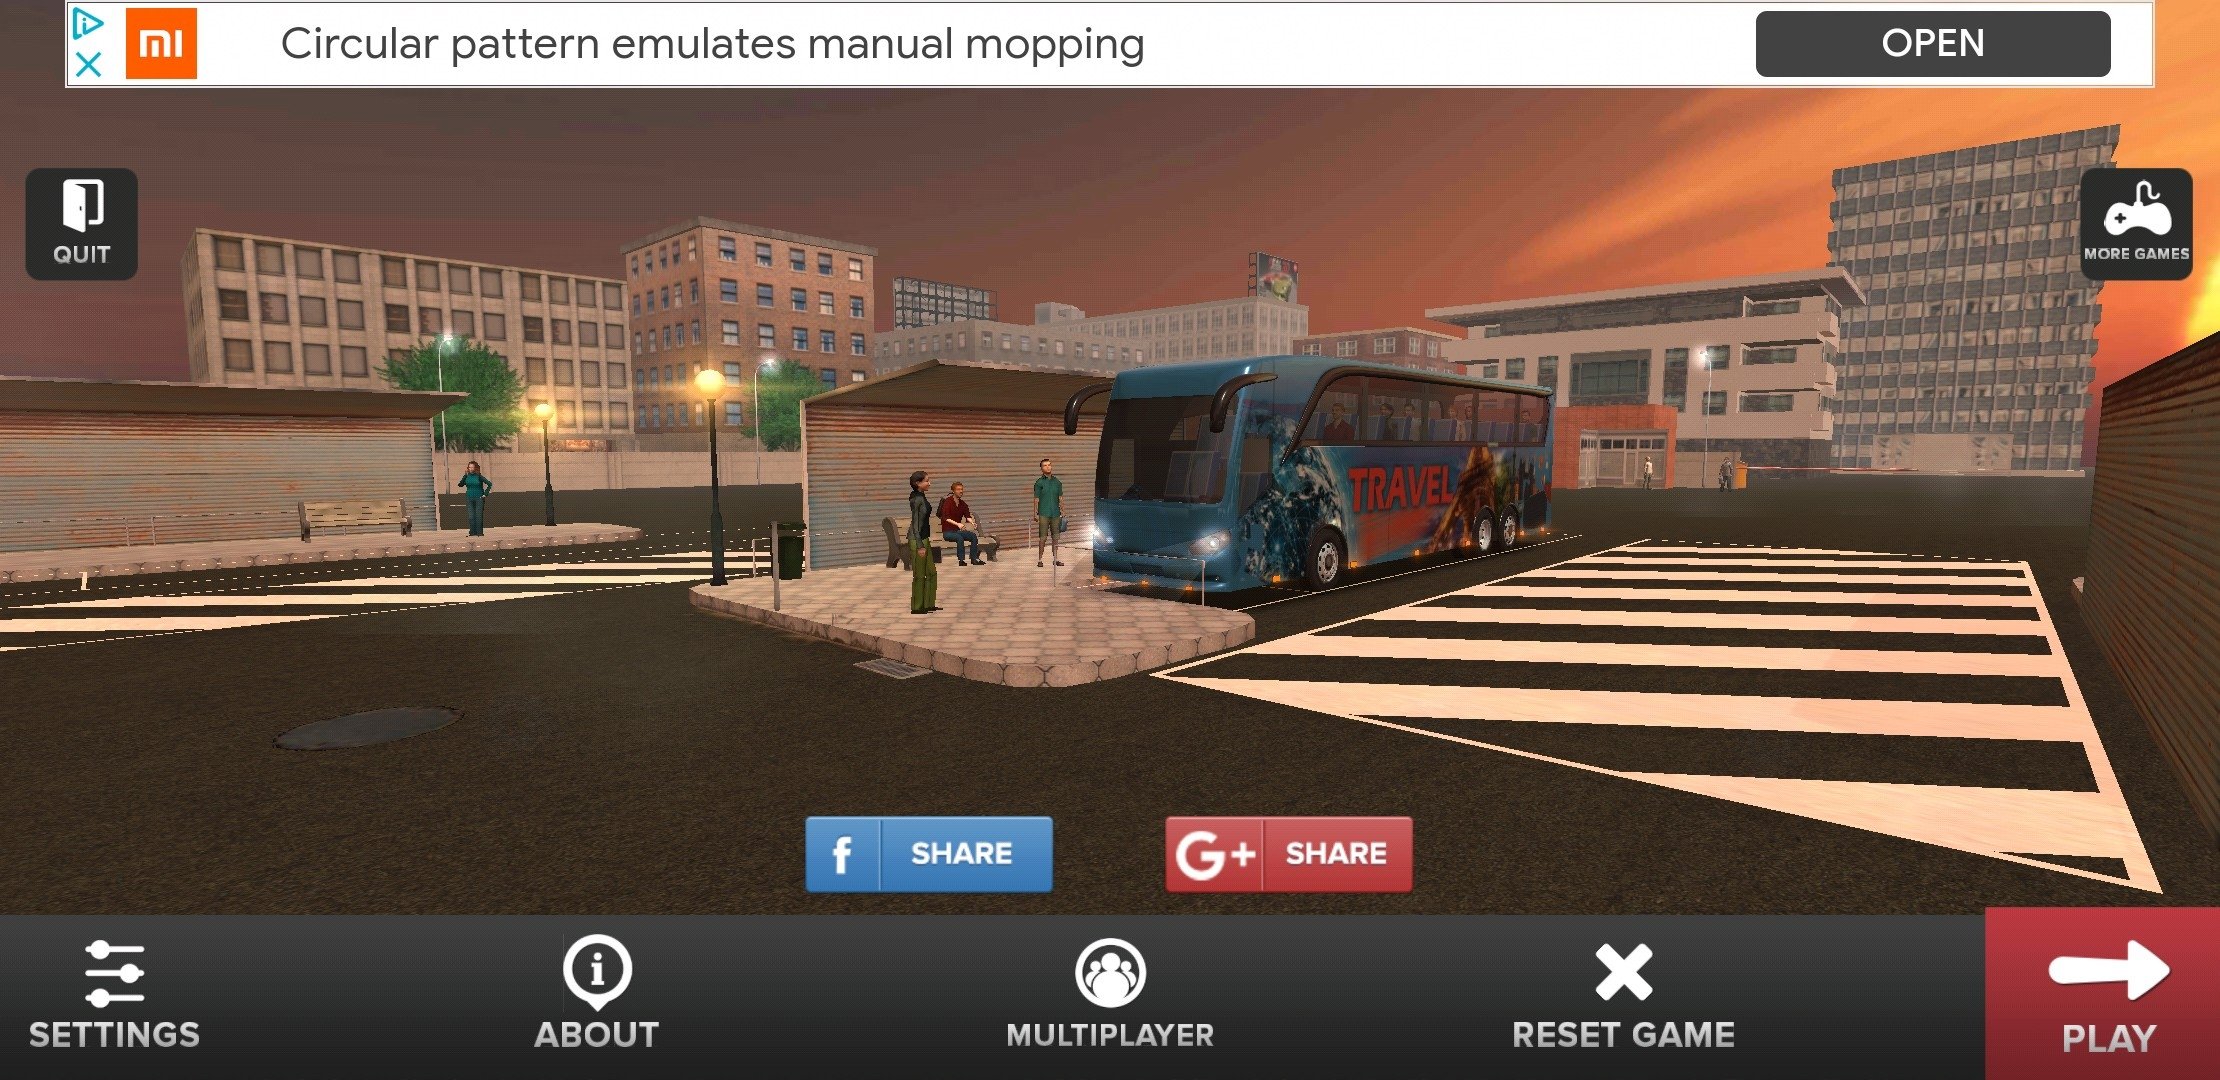 Bus Simulator Car Driving download the last version for mac